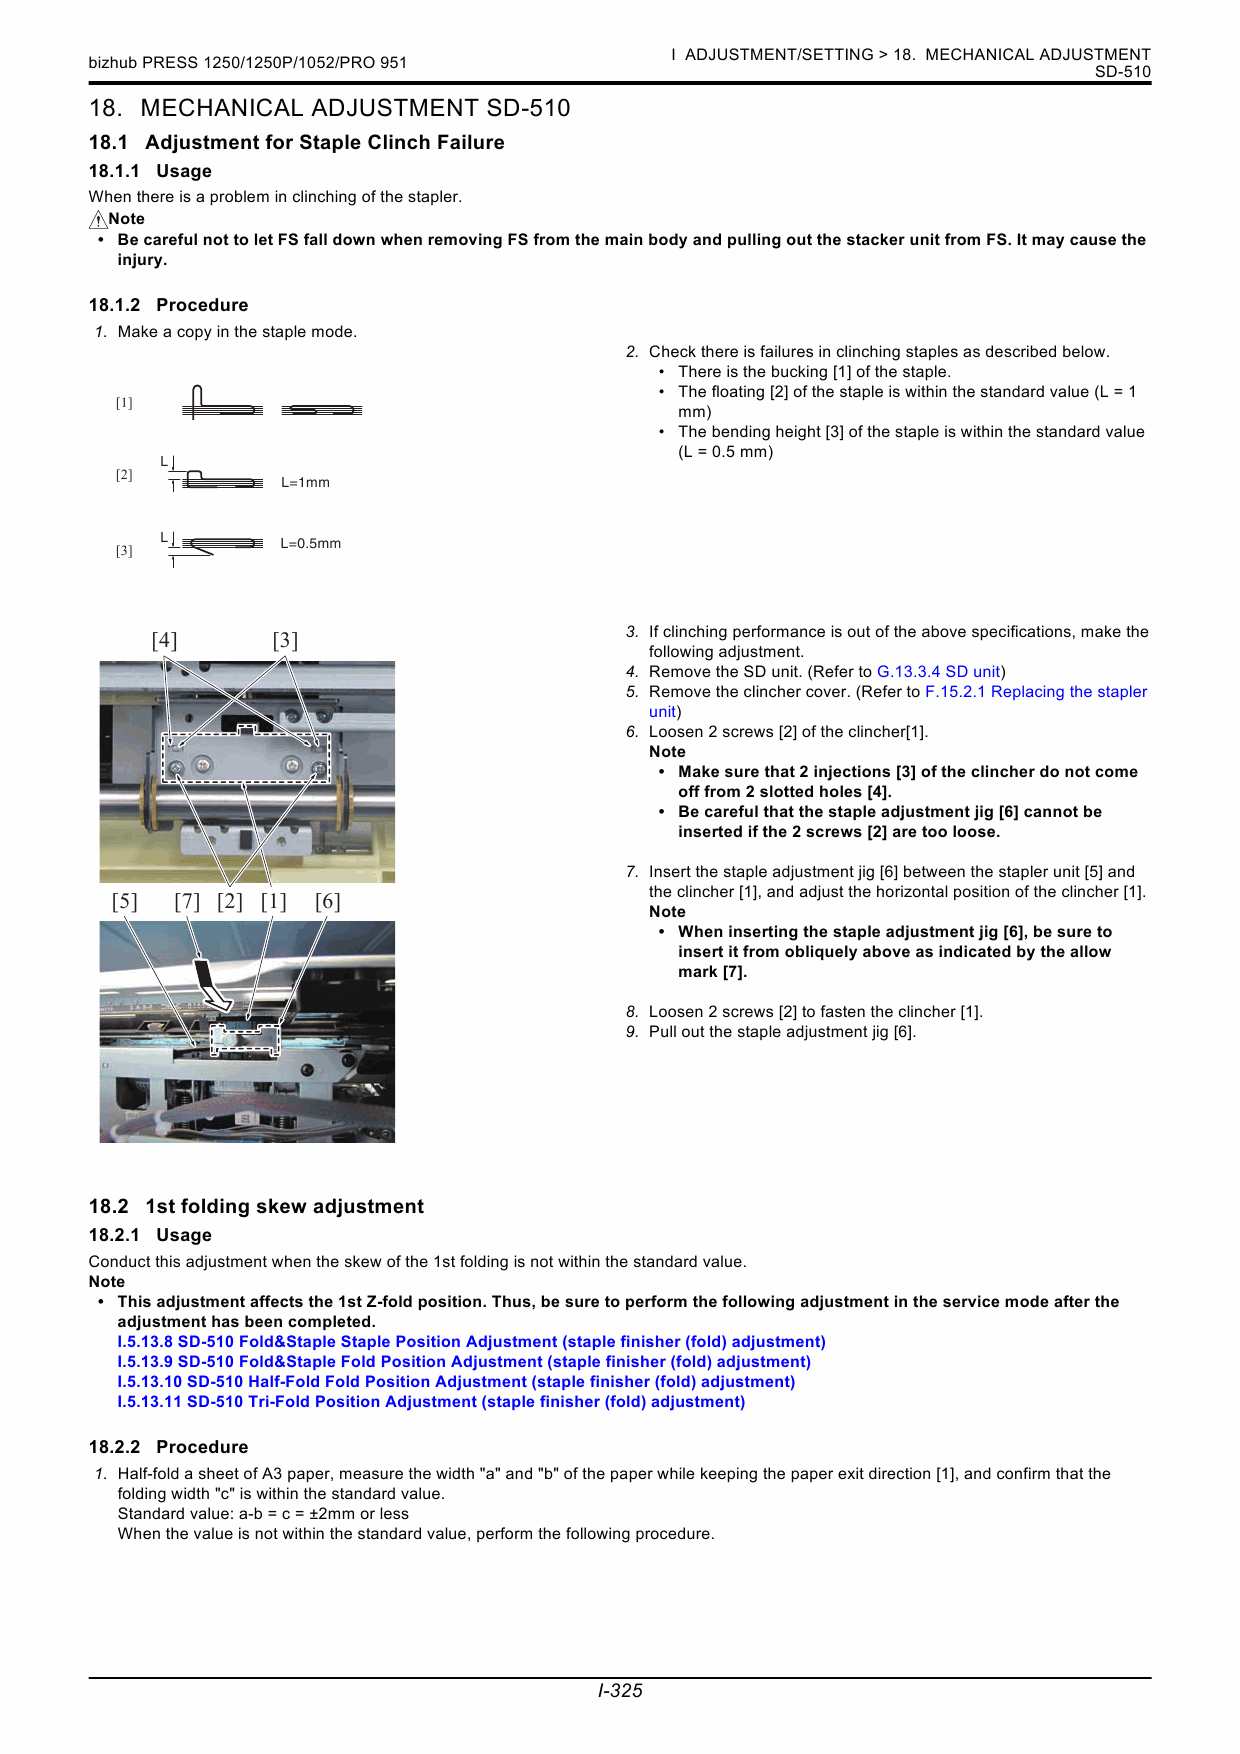 Konica-Minolta bizhub-PRESS 1052 1250 1250P Service Manual-5